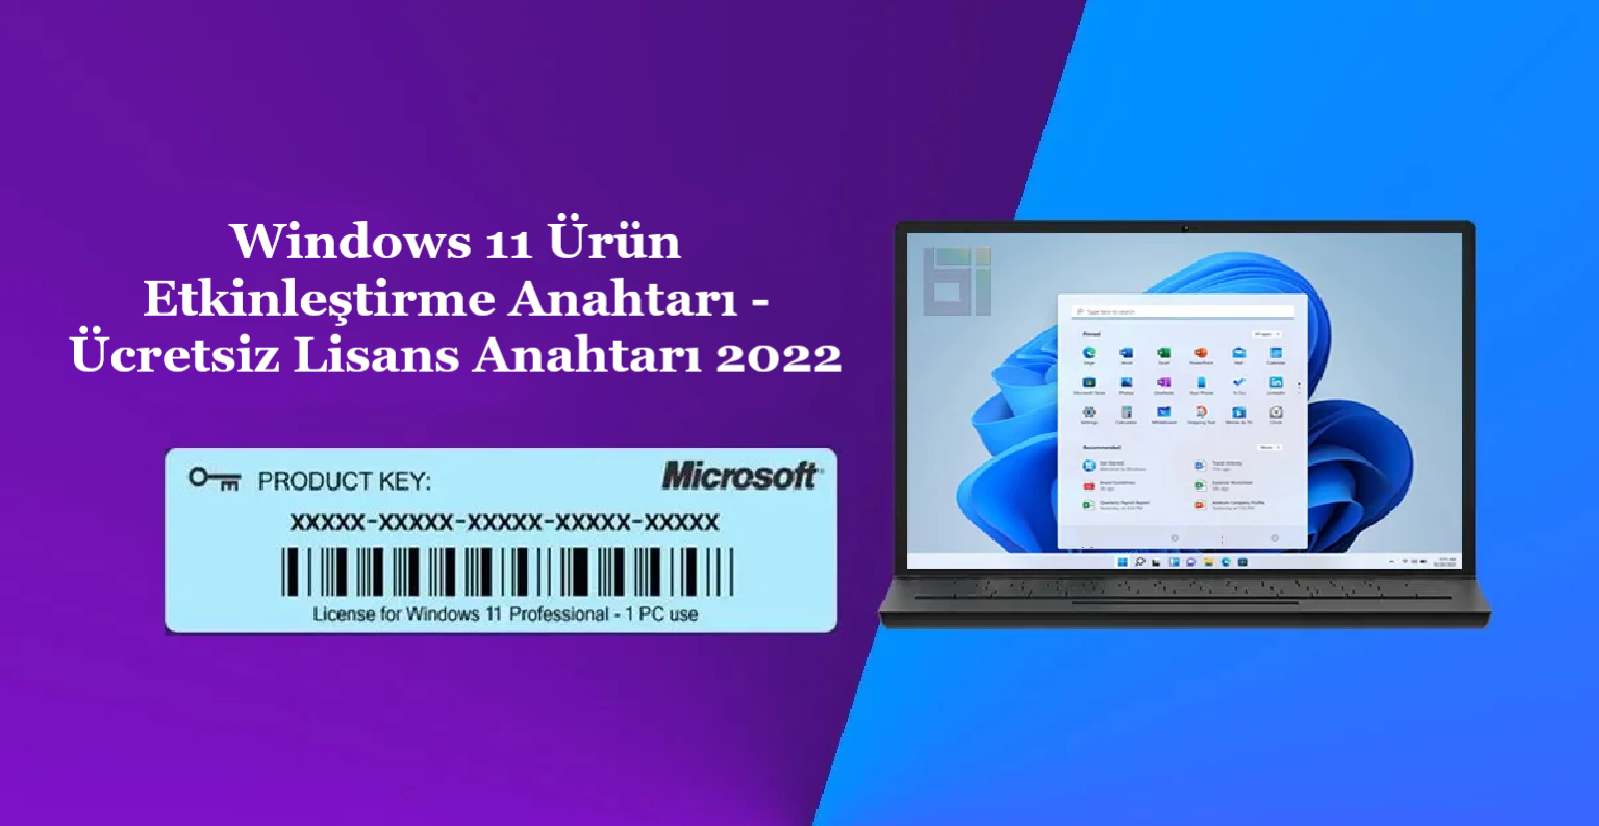 Windows 11 Ürün Etkinleştirme Anahtarı - Ücretsiz Lisans Anahtarı 2022